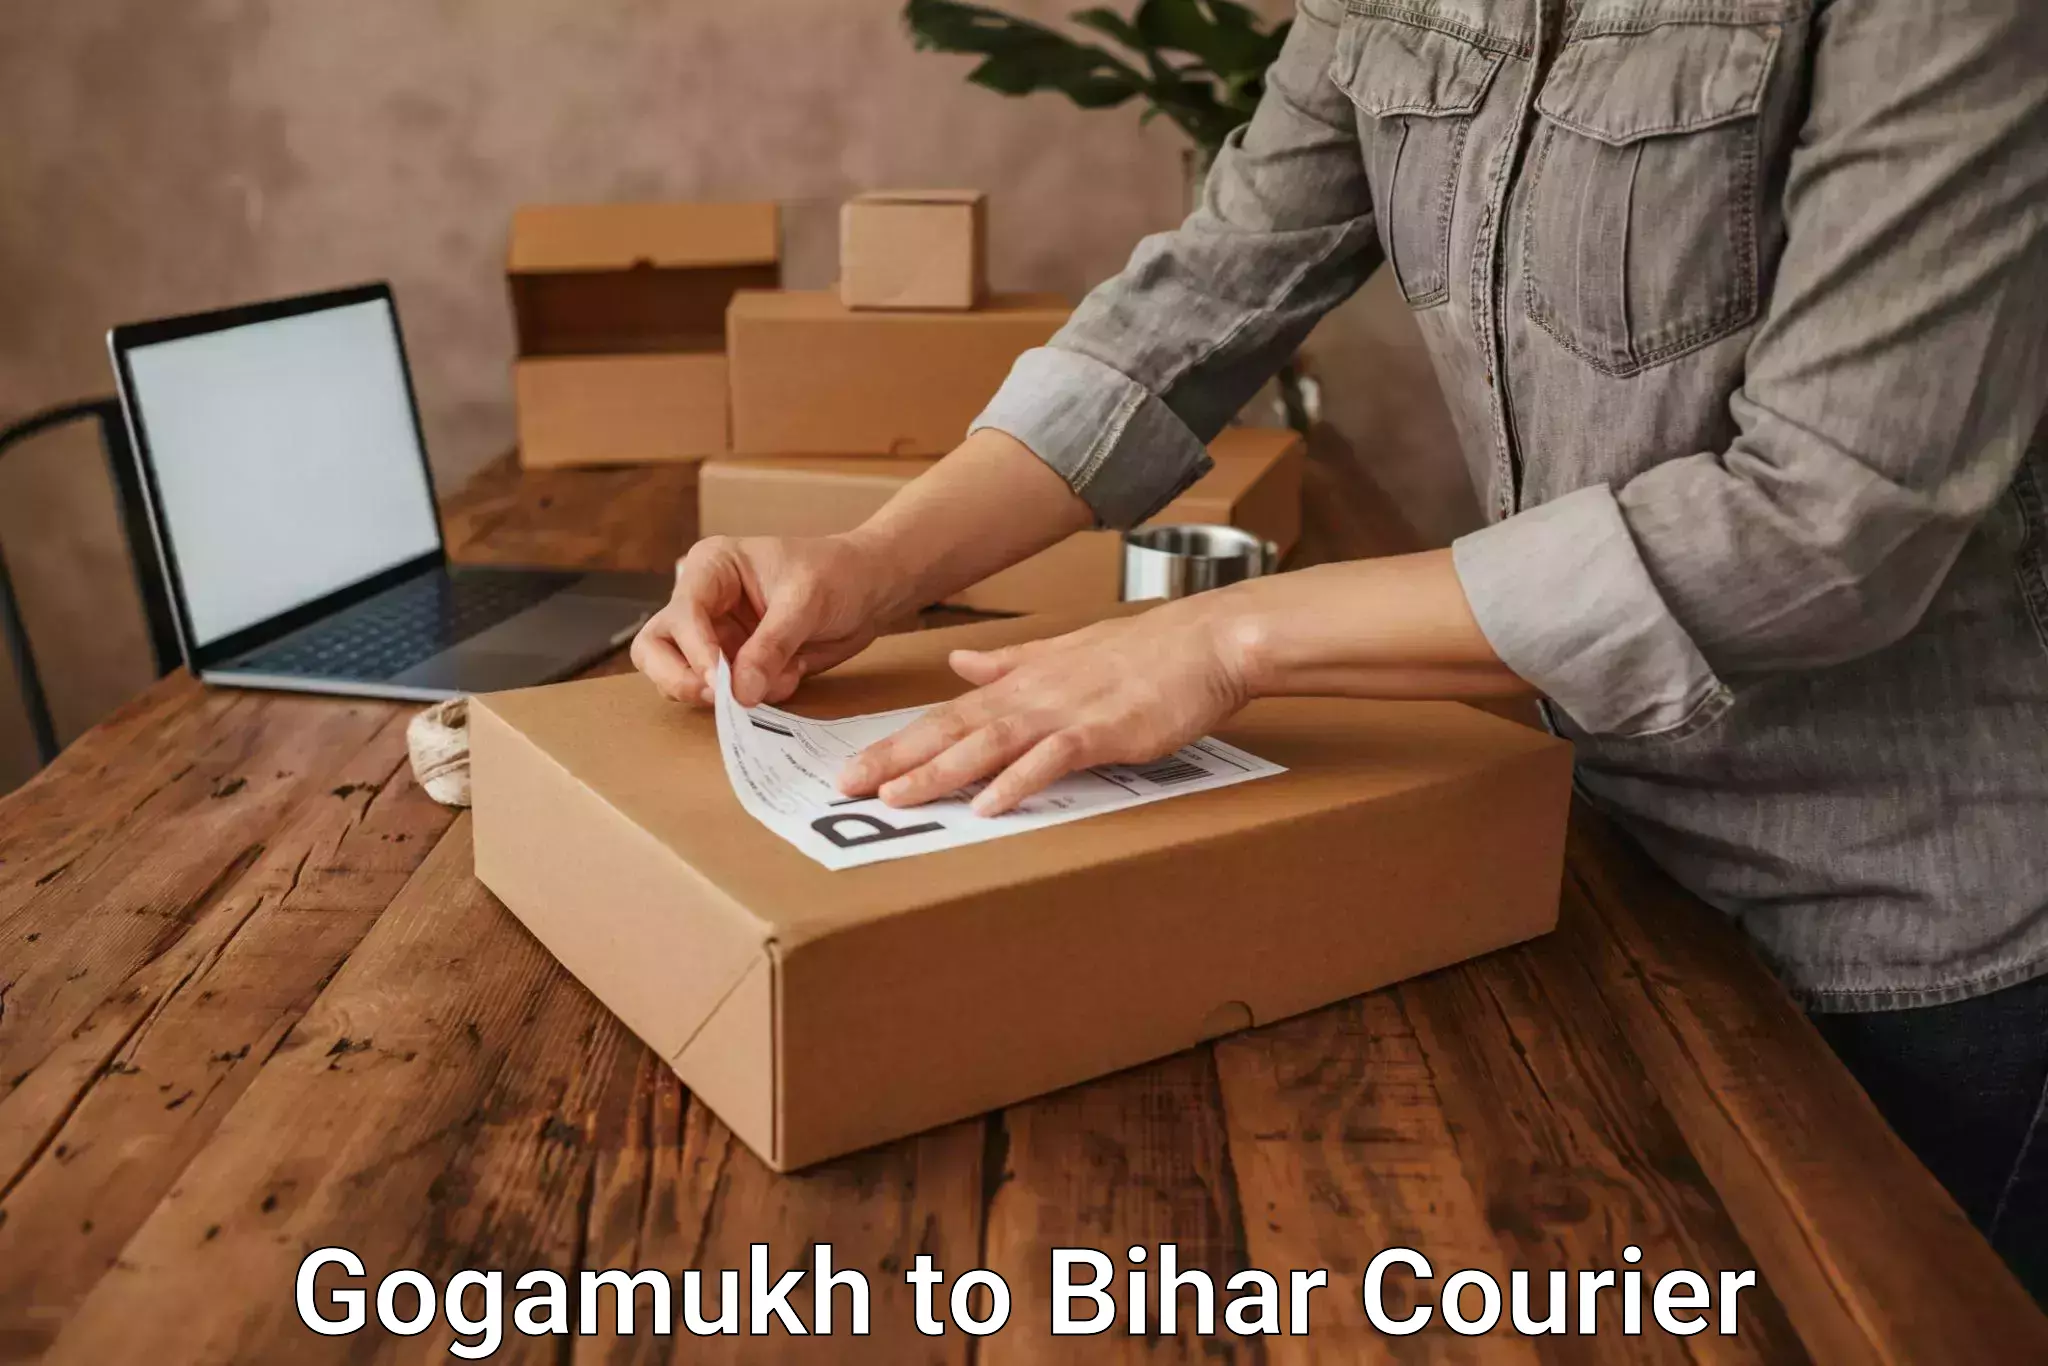 Expedited shipping methods Gogamukh to Biraul